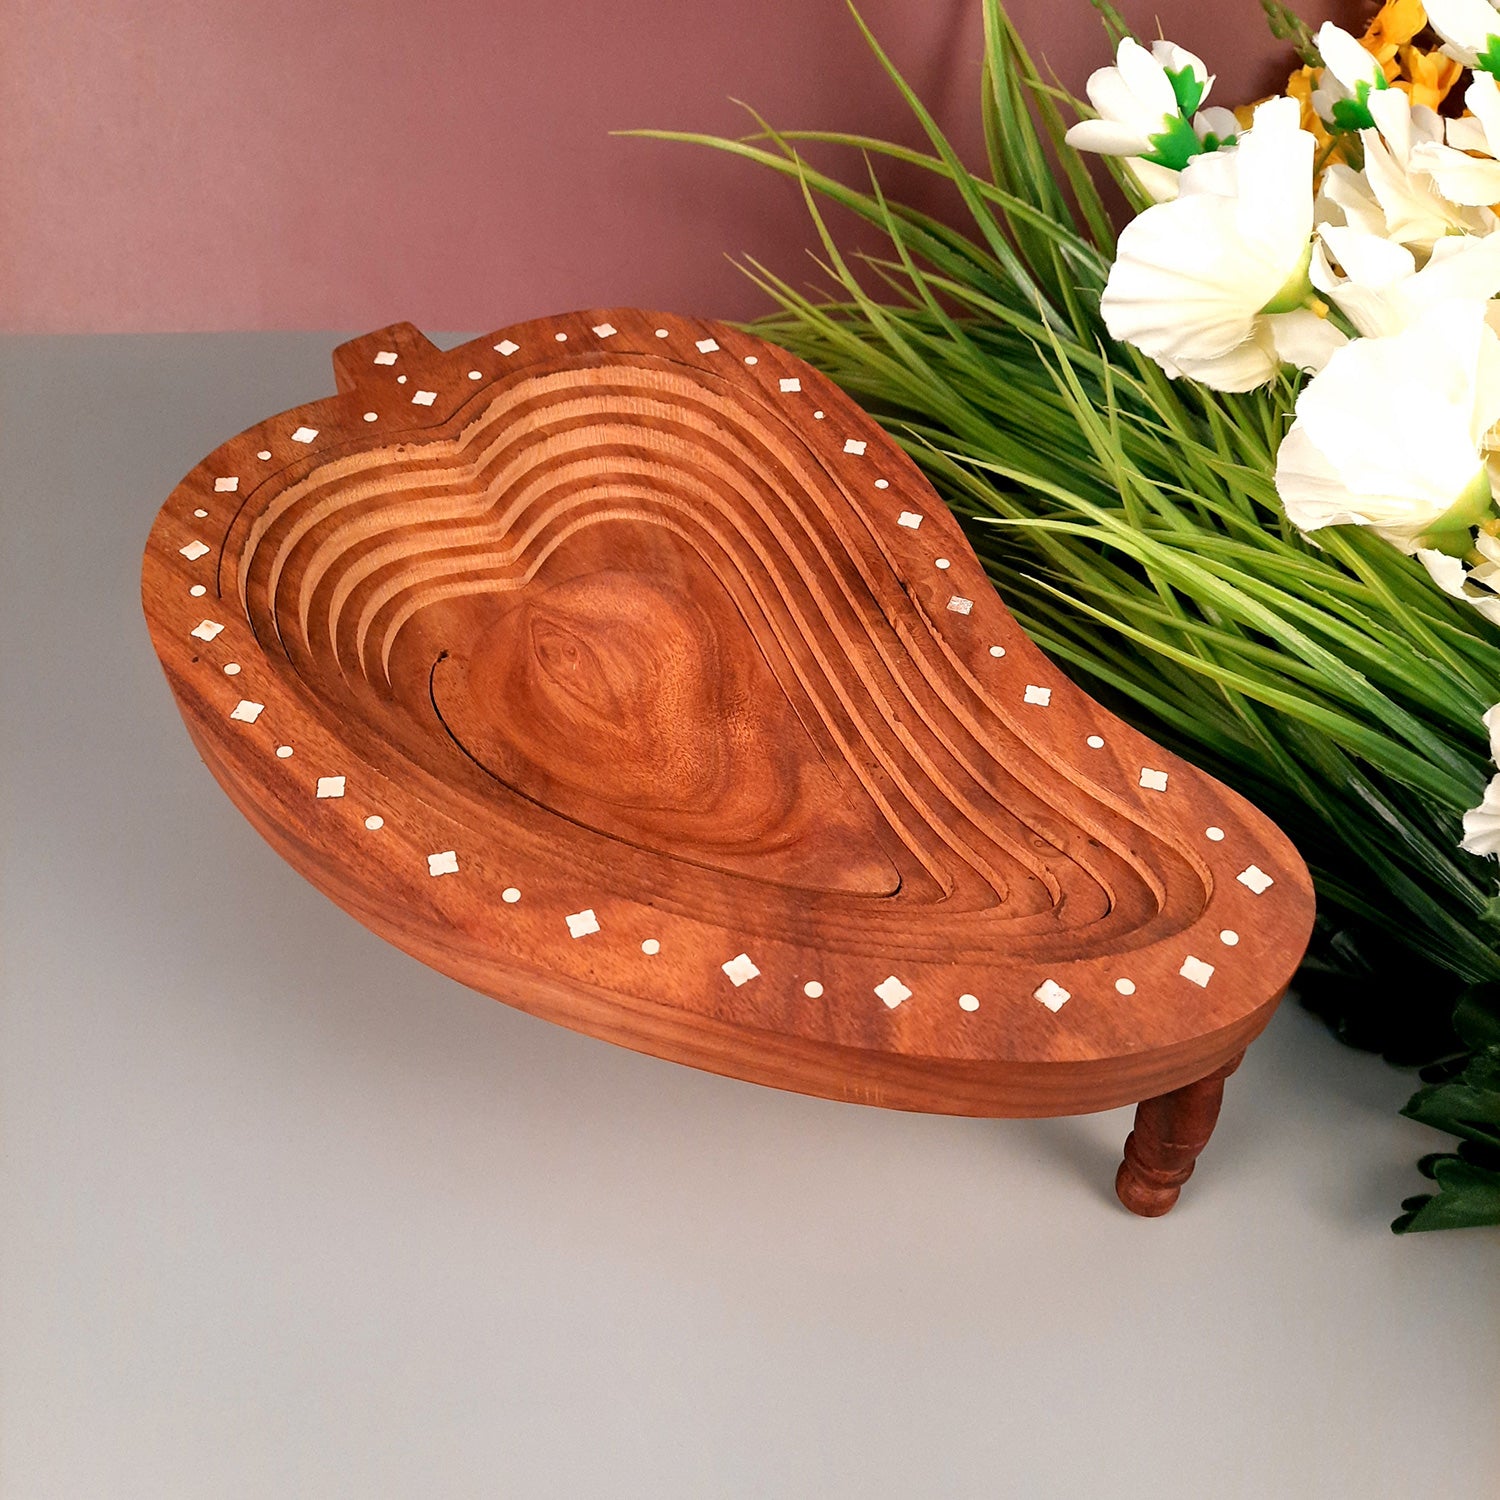 Wooden Fruit & Vegetable Basket | Foldable Fruit Basket - for Serving & Dining Table Decor - 14 Inch - Apkamart